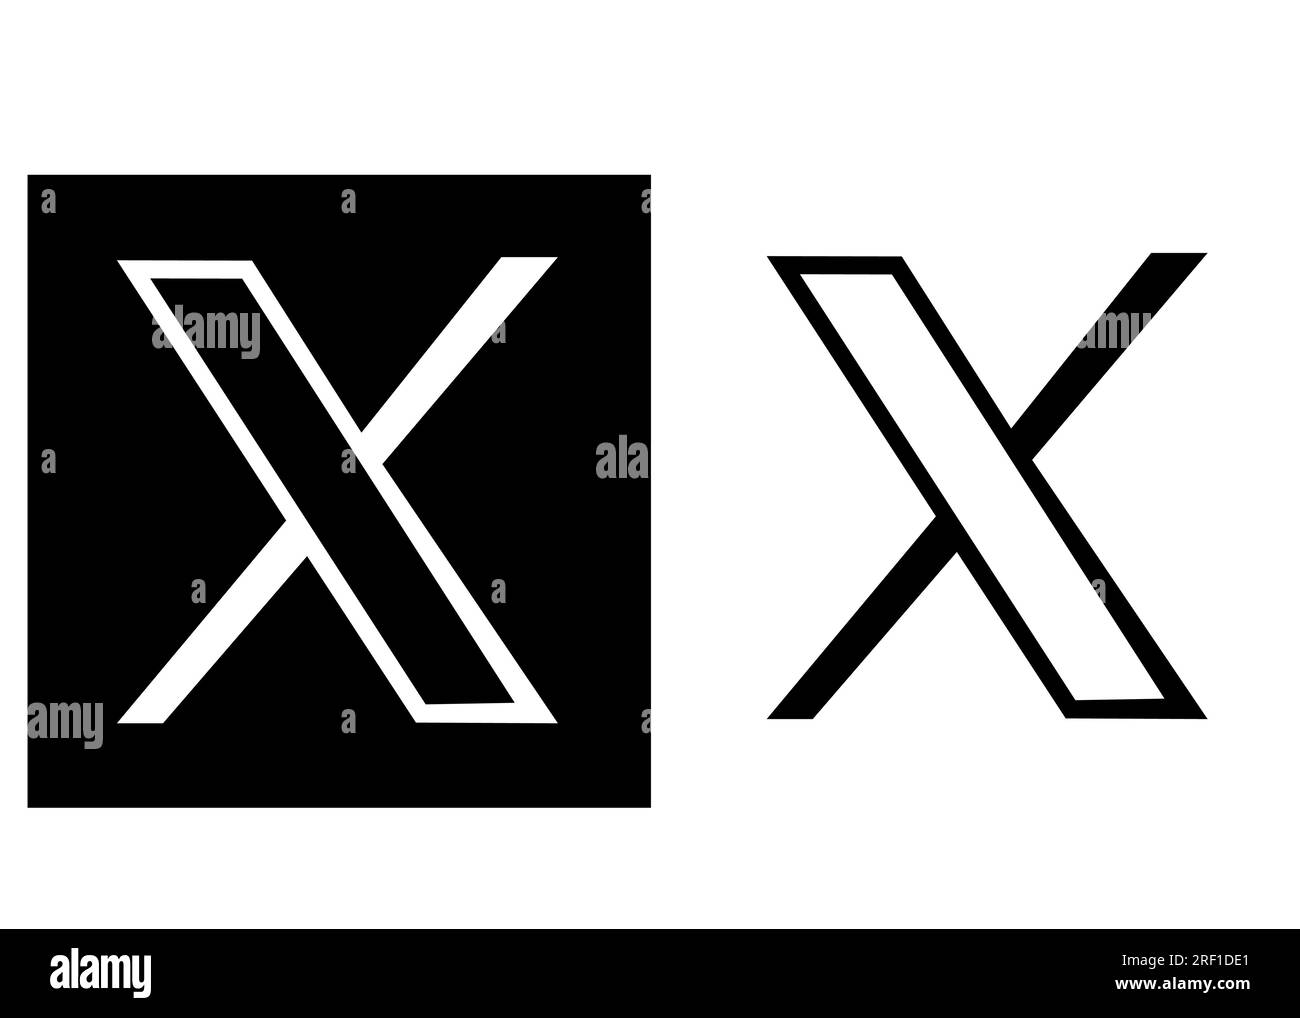 Alphabet letter x black and white logo design Vector Image